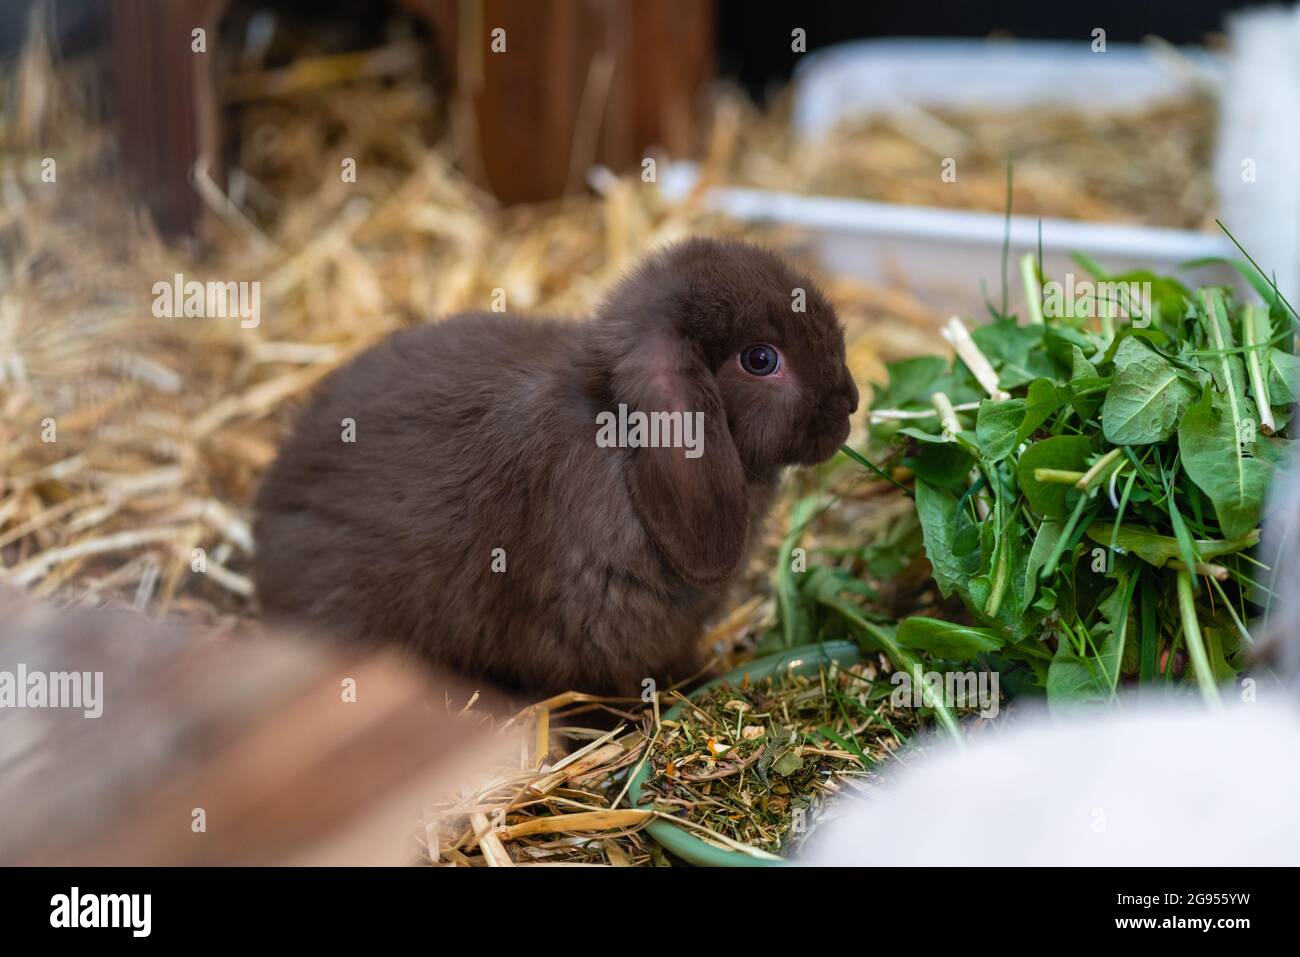 Lapin nain brun (bélier nain) assis à côté de son bol alimentaire dans sa huche. Banque D'Images